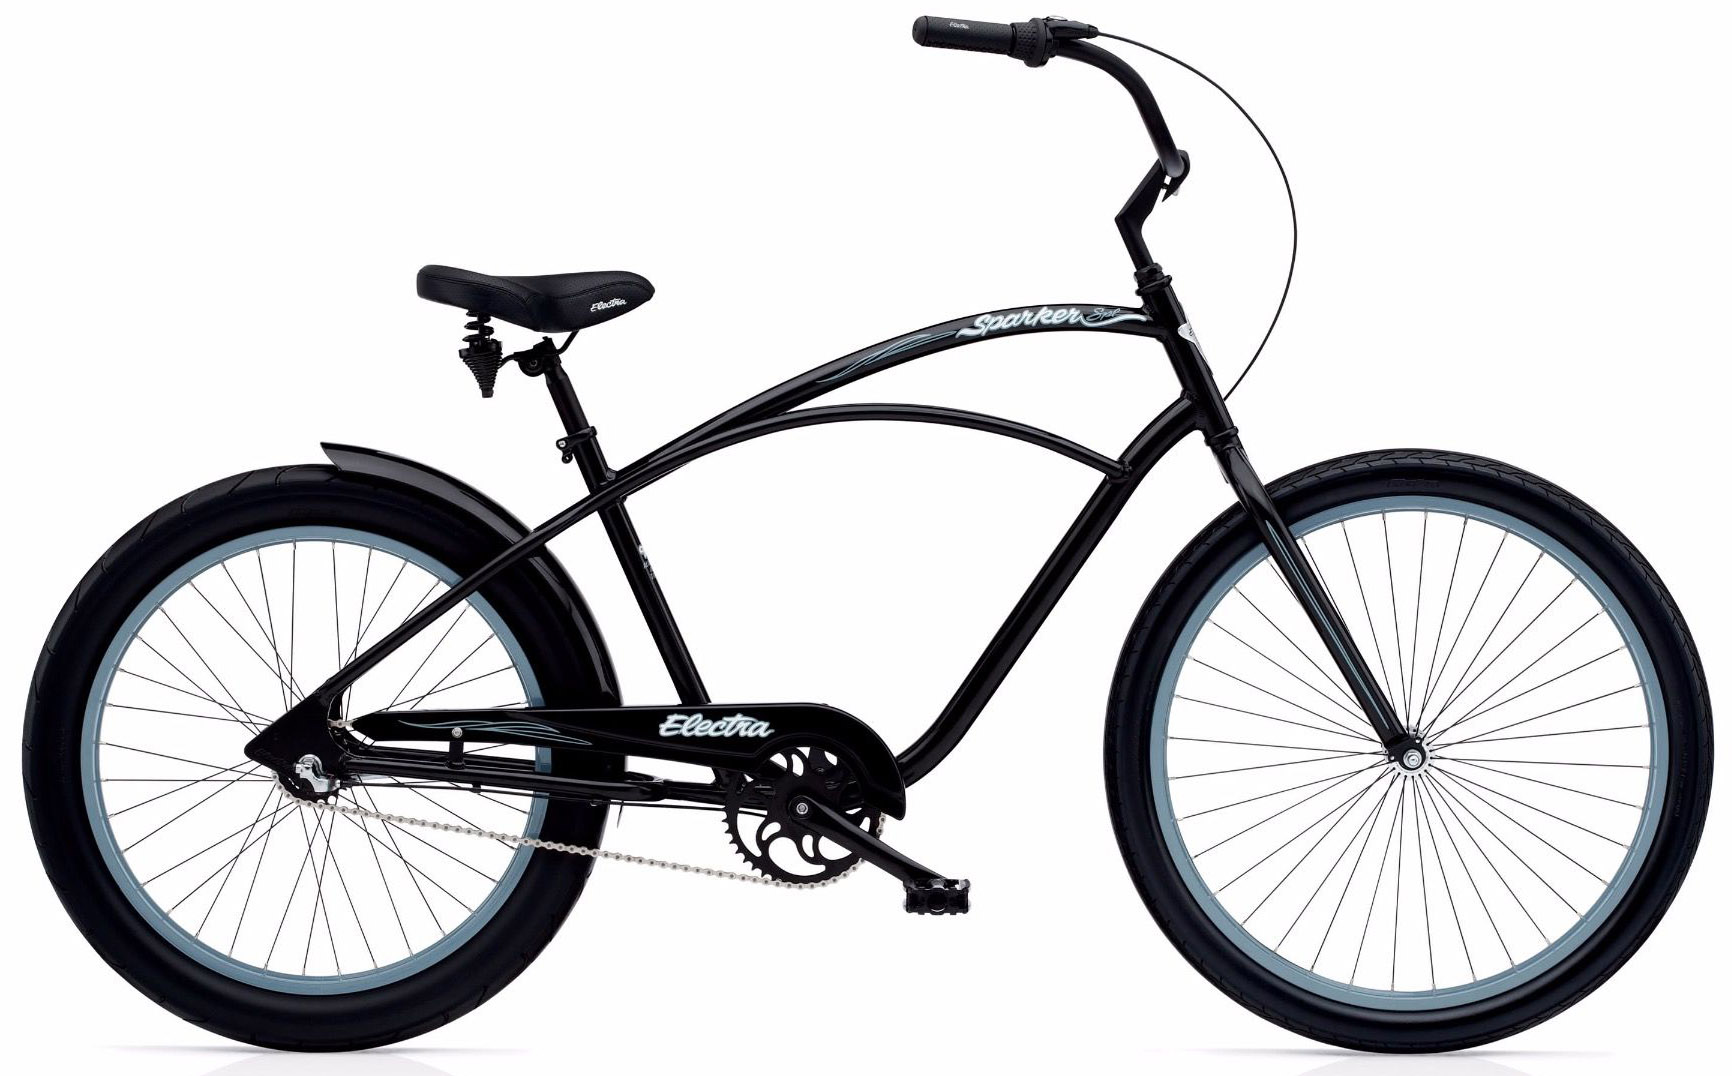  Отзывы о Городском велосипеде Electra Cruiser Sparker Special 3i 2020